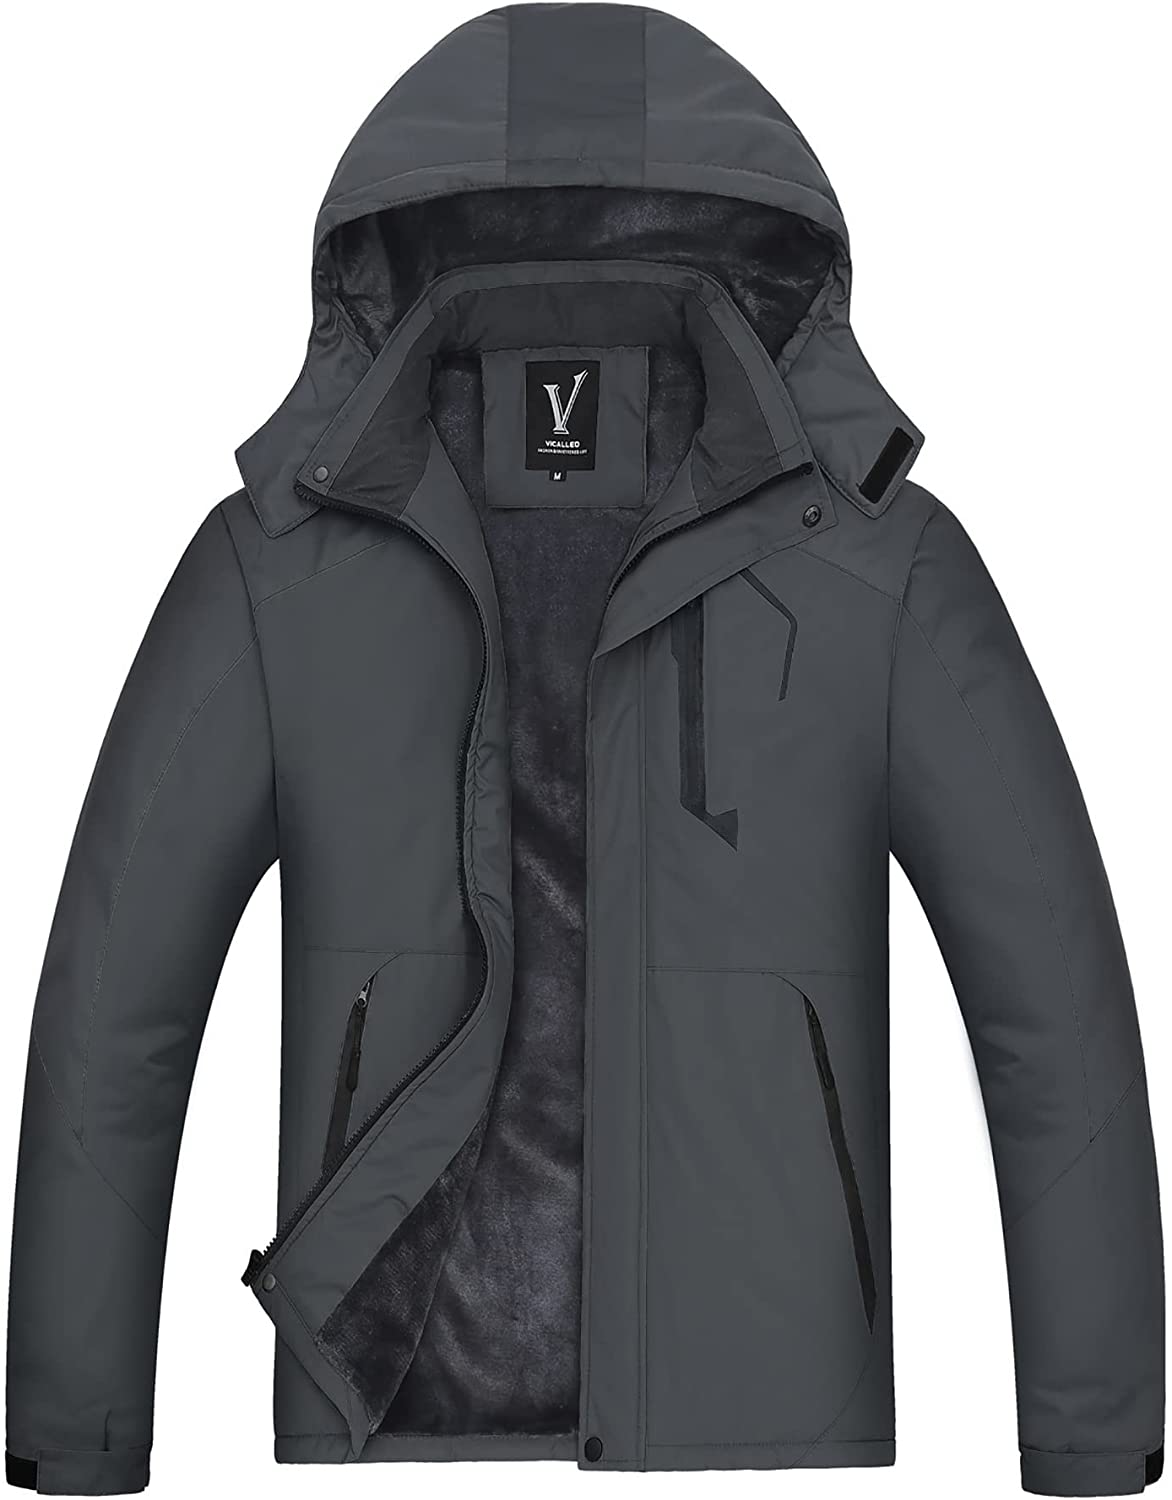 VICALLED Men's Outdoor Mountain Ski Jacket Snow Waterproof Fleece Windproof Skiing Rain Jackets Winter Hooded Coat 